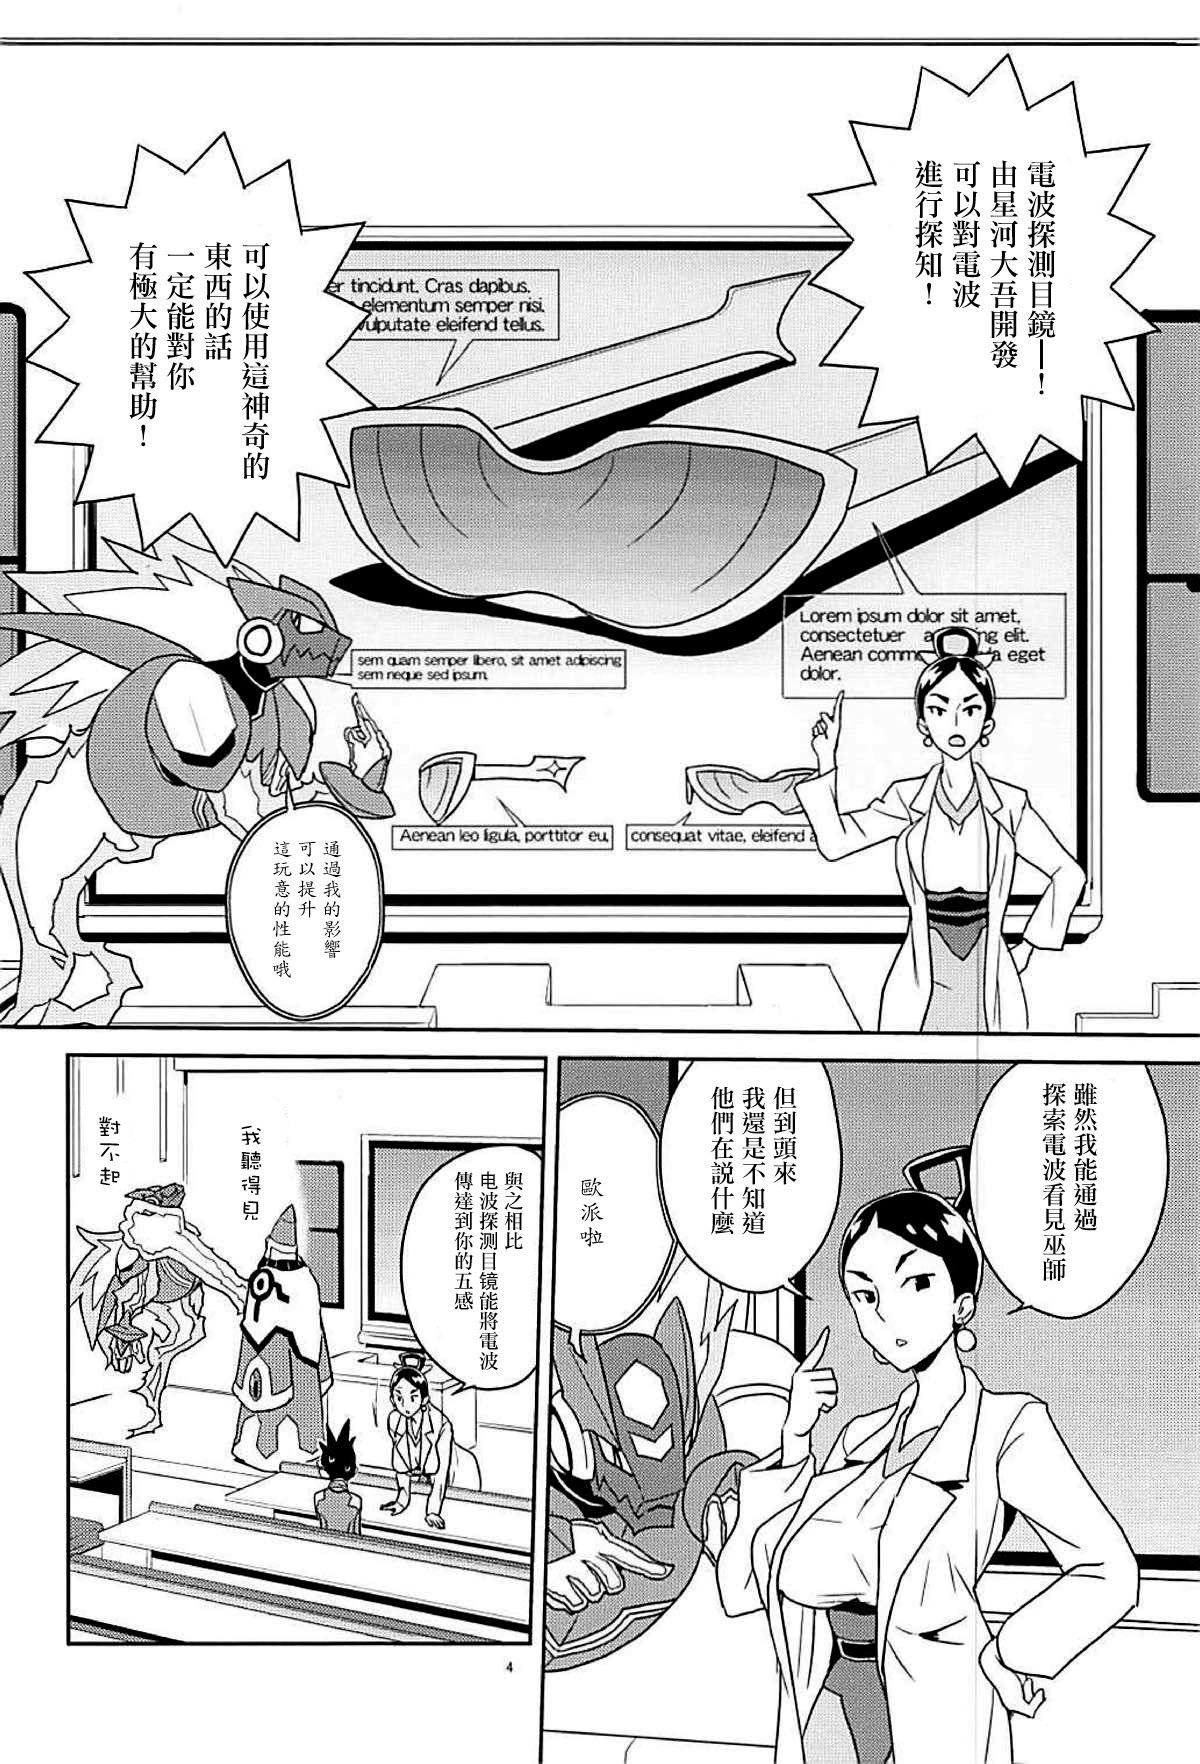 Teamskeet Materialize Shirogane Luna - Mega man star force Free Oral Sex - Page 4